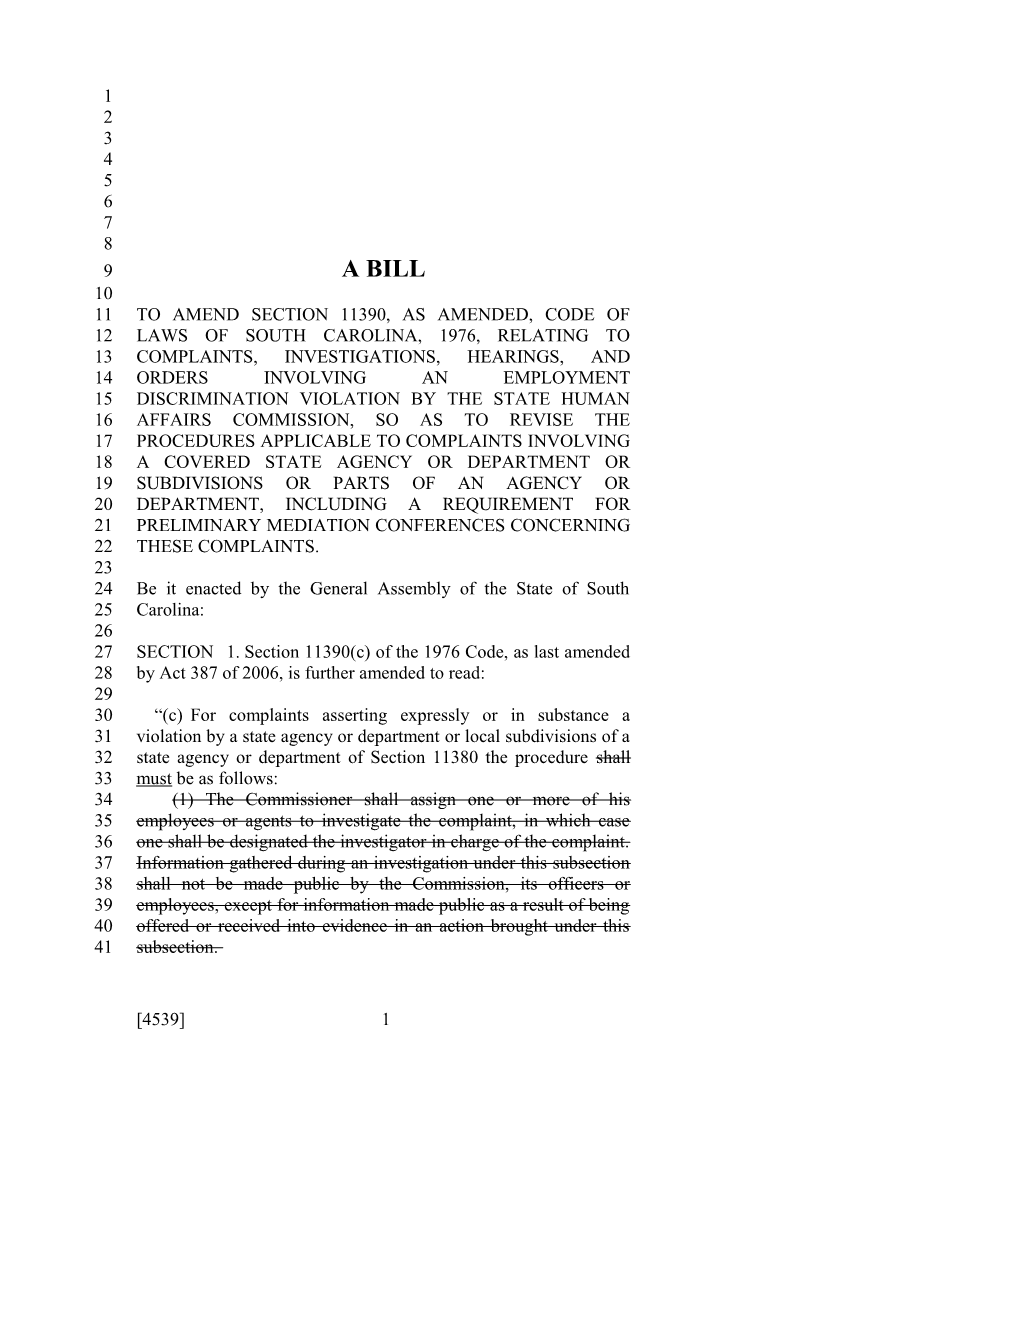 2015-2016 Bill 4539 Text of Previous Version (Dec. 10, 2015) - South Carolina Legislature Online